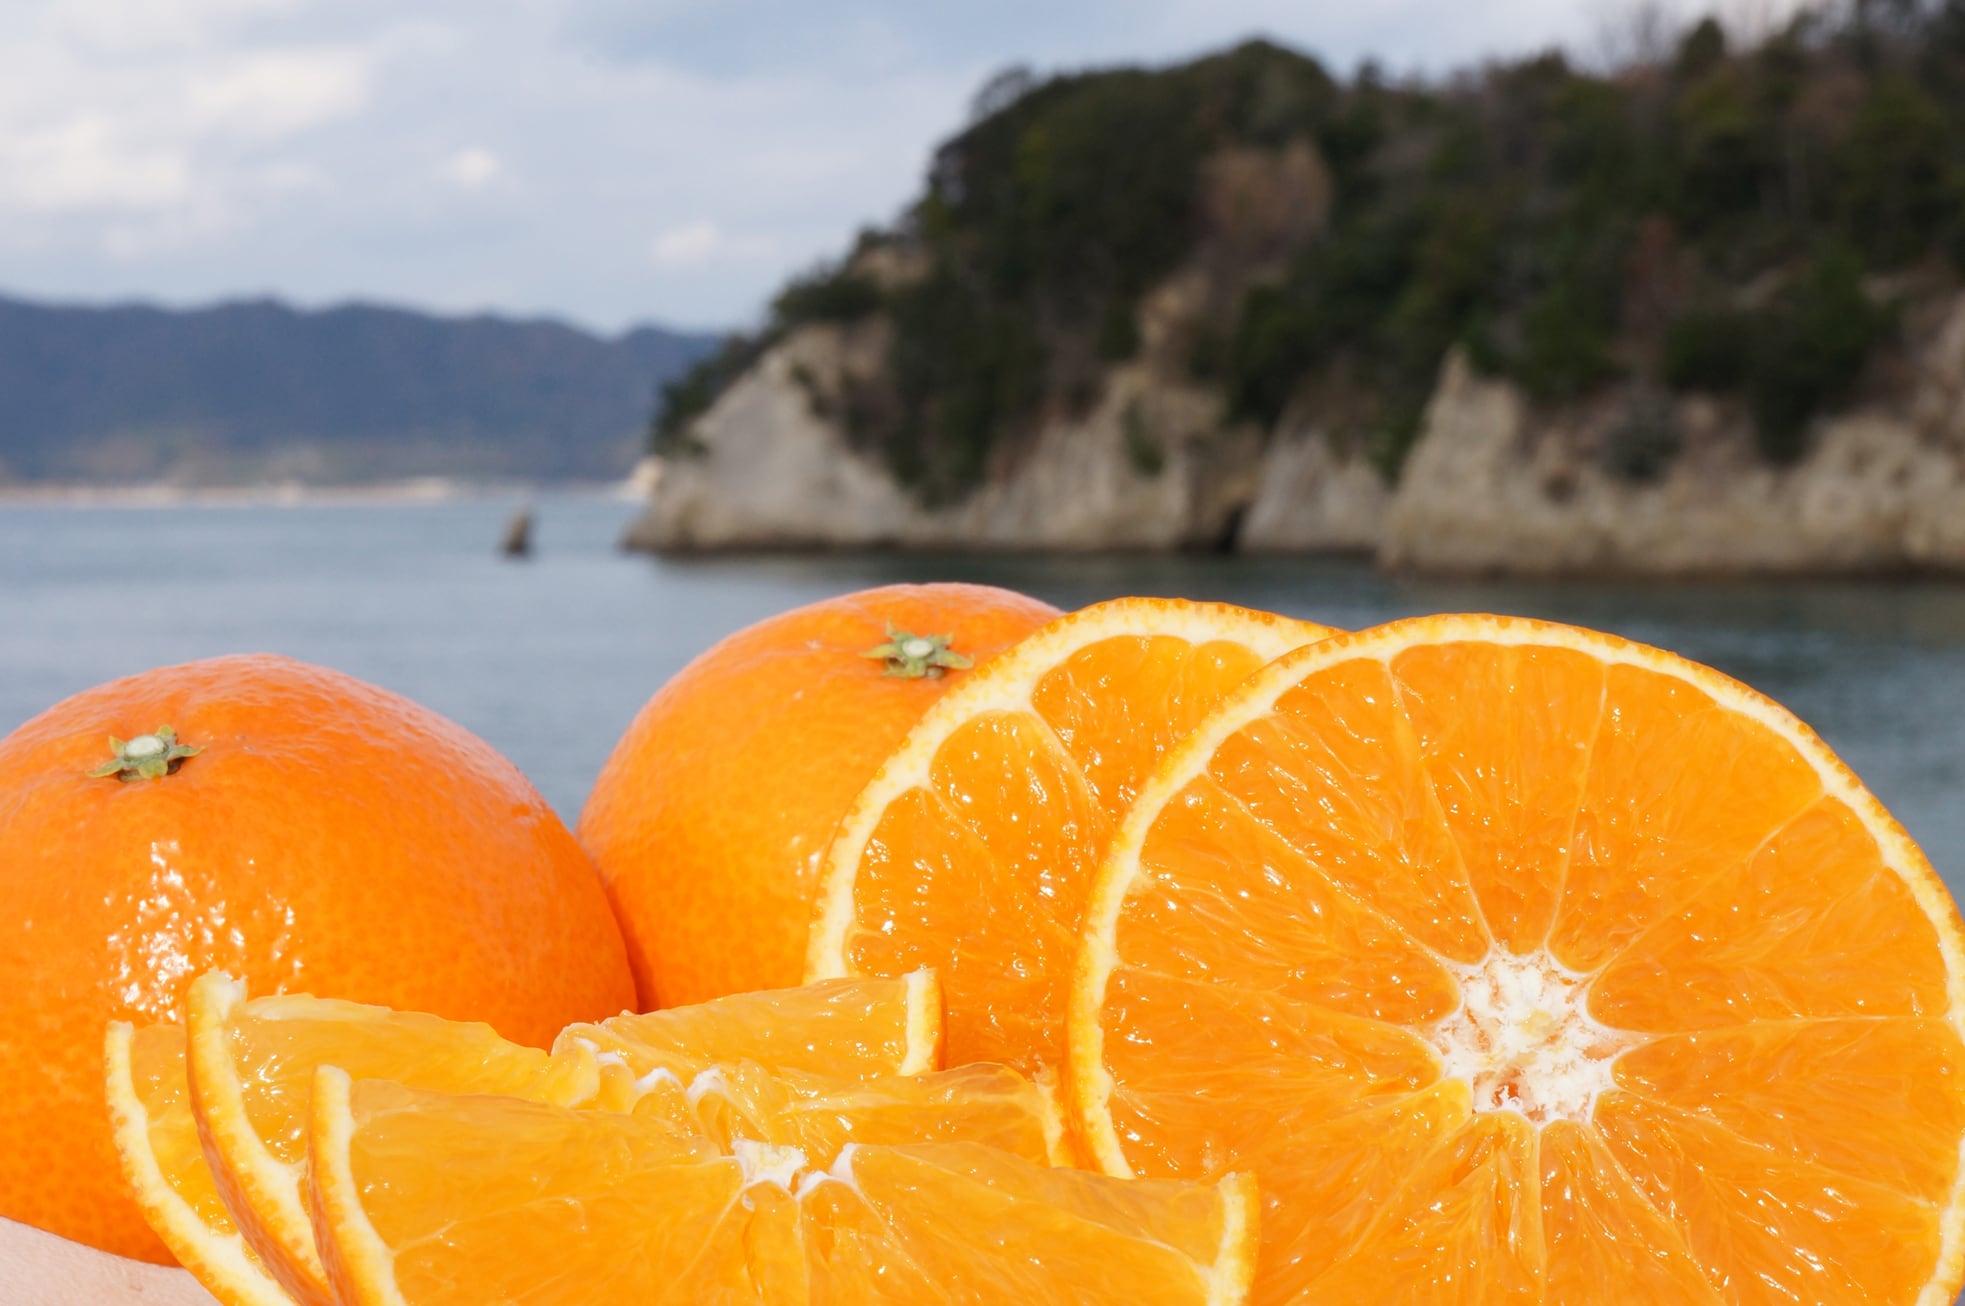 柑橘王国愛媛が産んだ奇跡の柑橘「瀬戸のまどんな」は自然によって作られた健康ゼリーです！